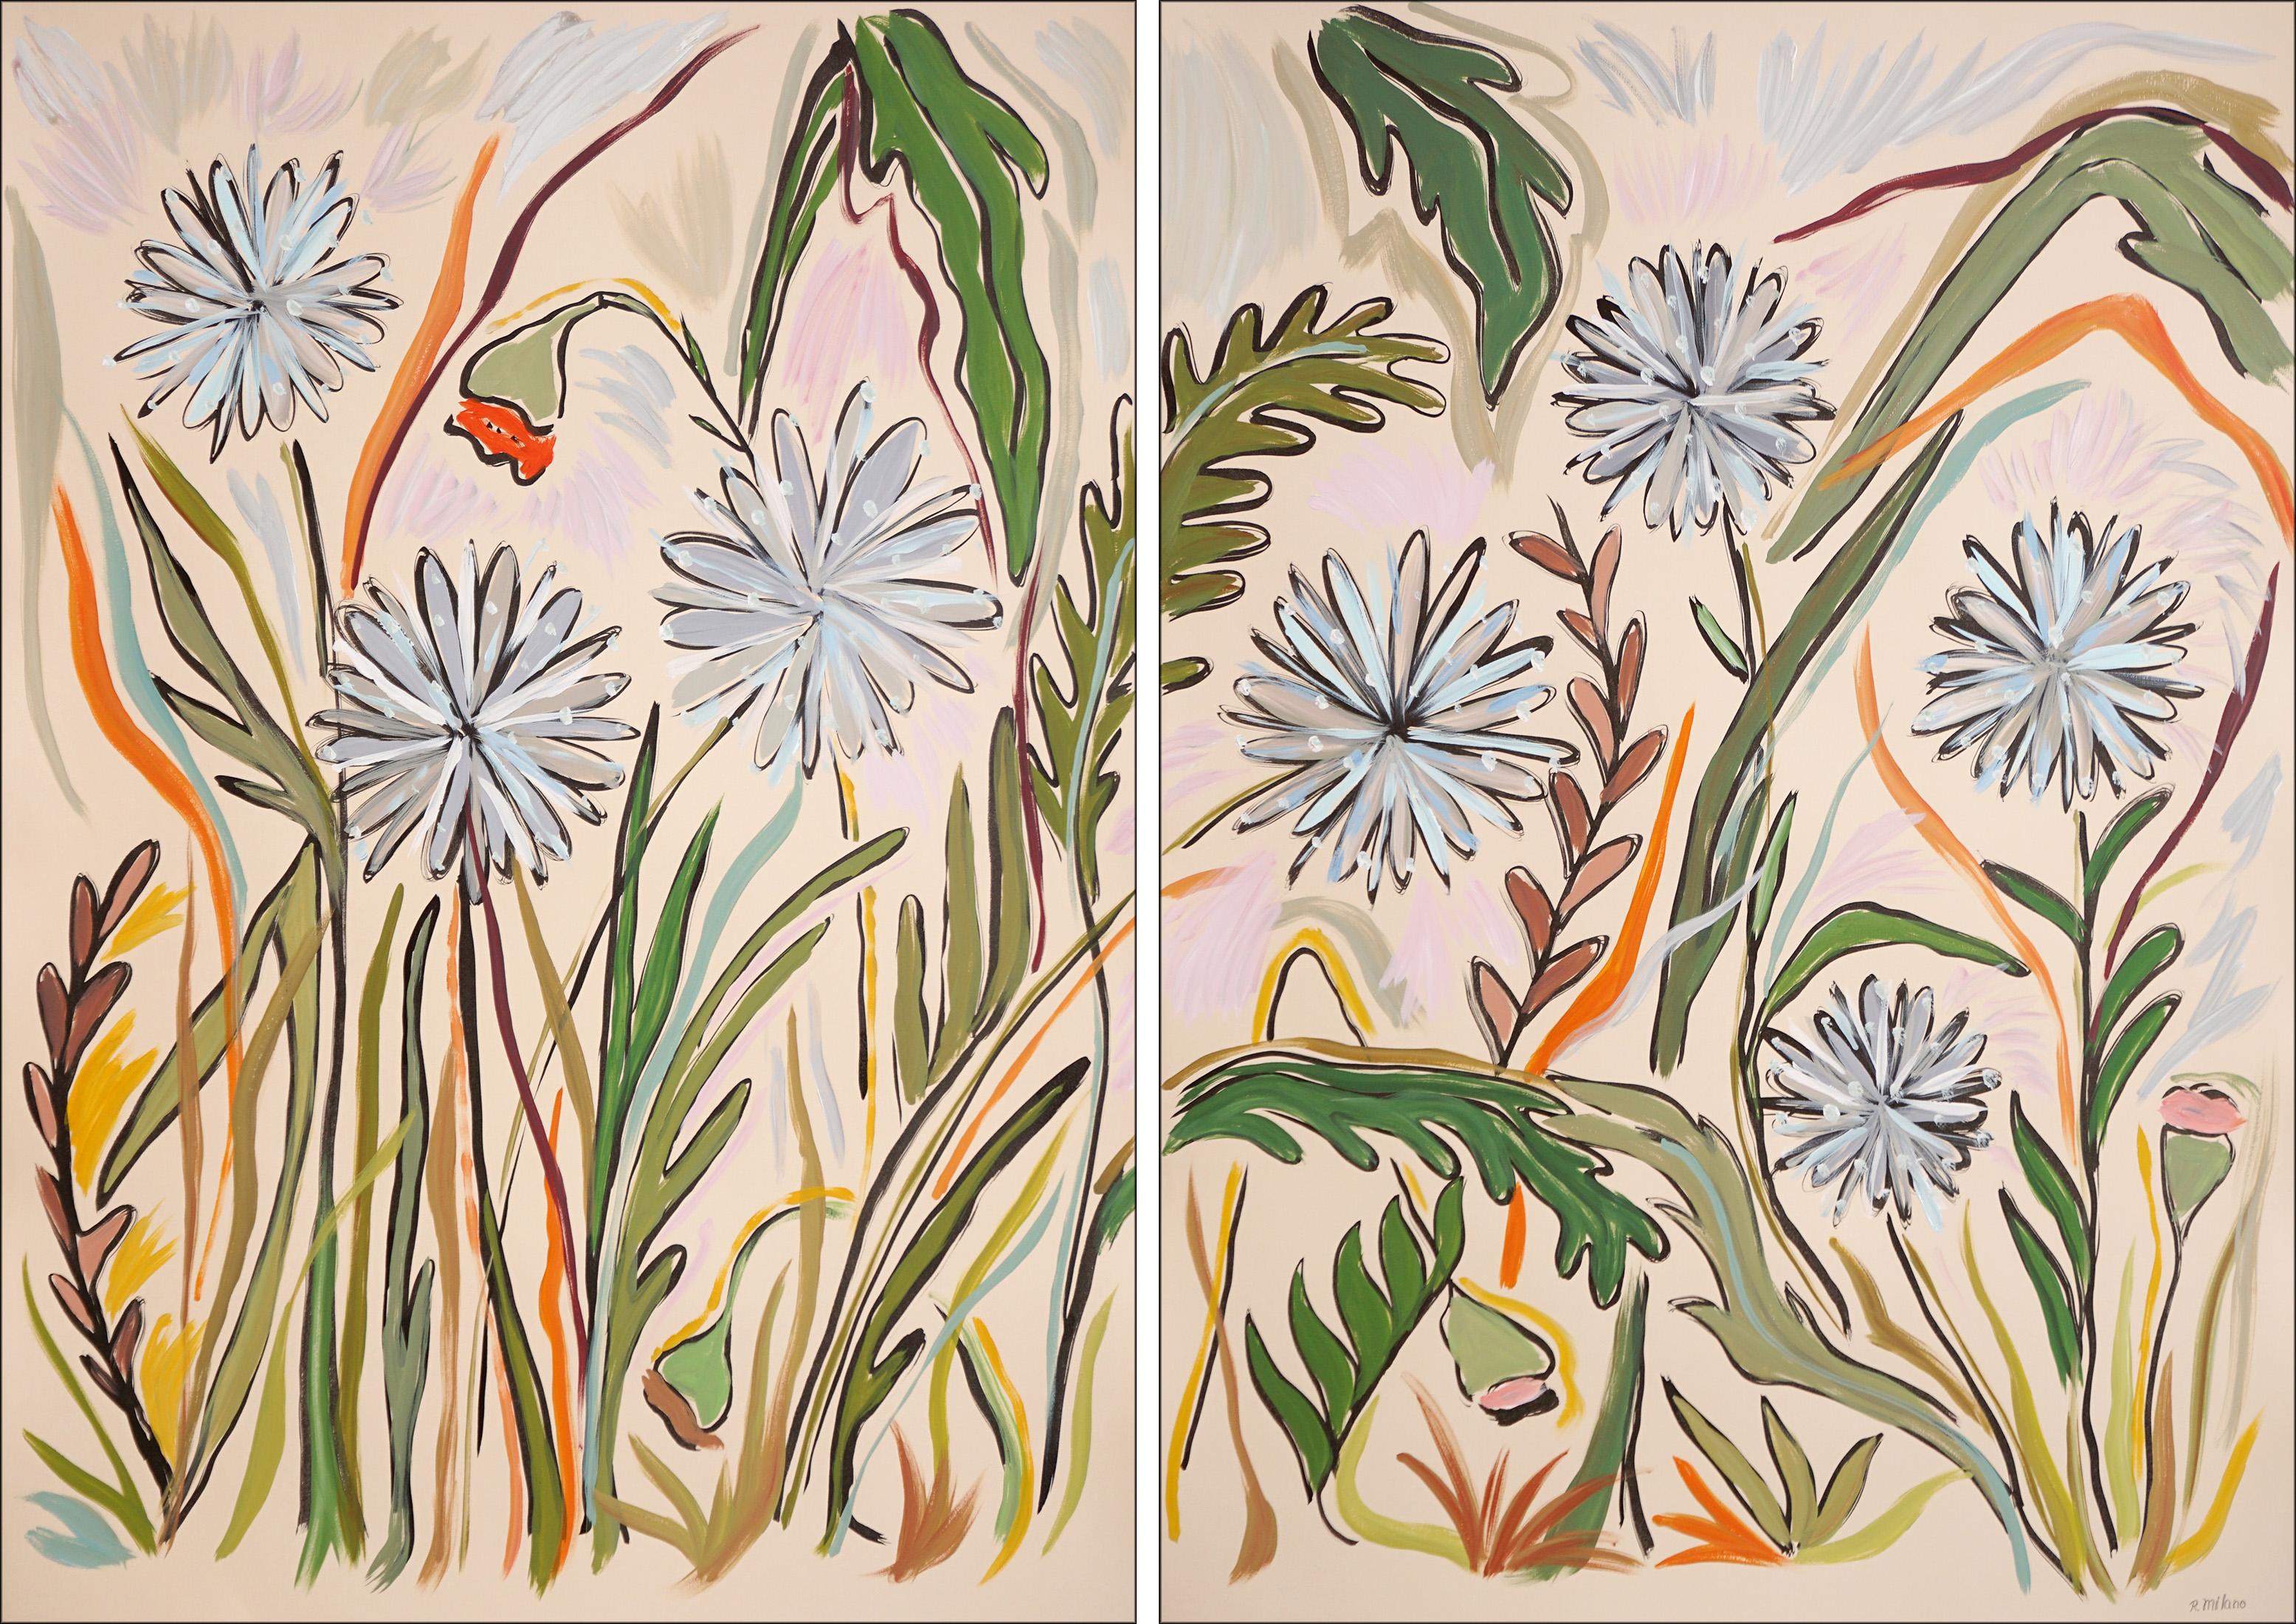 Flower Paintings